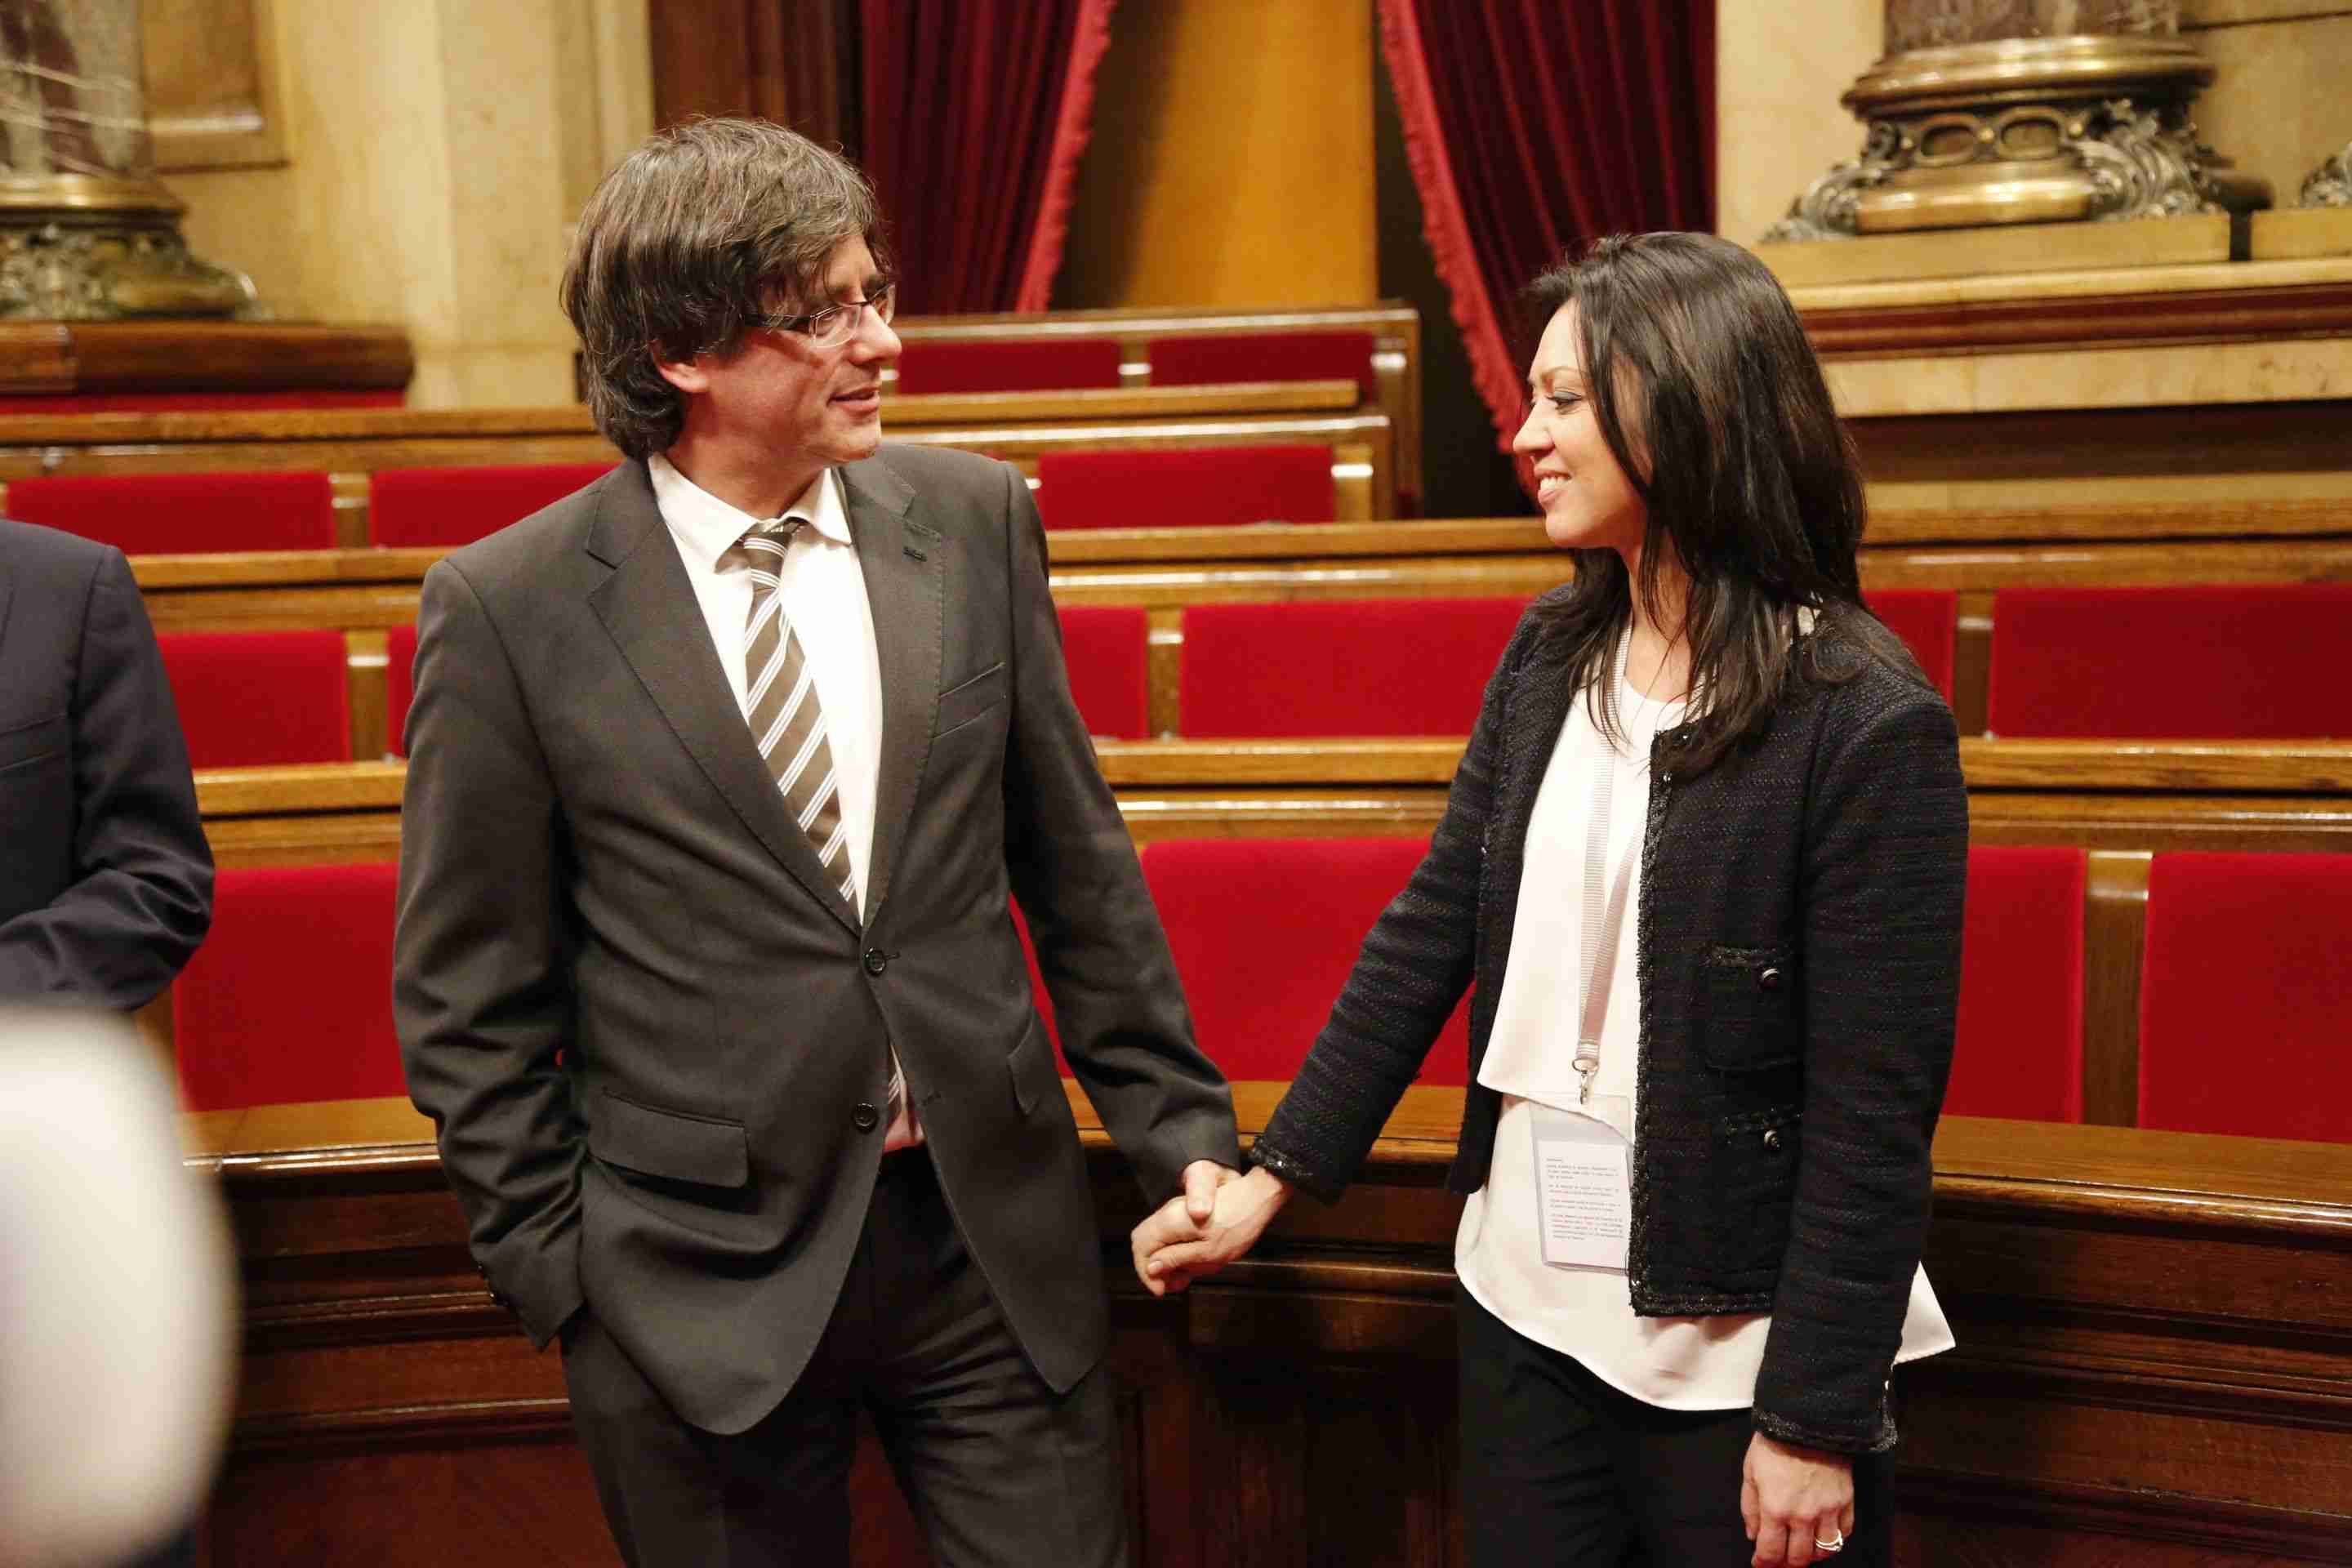 Qui és Marcela Topor, la 'primera dama' de Catalunya?